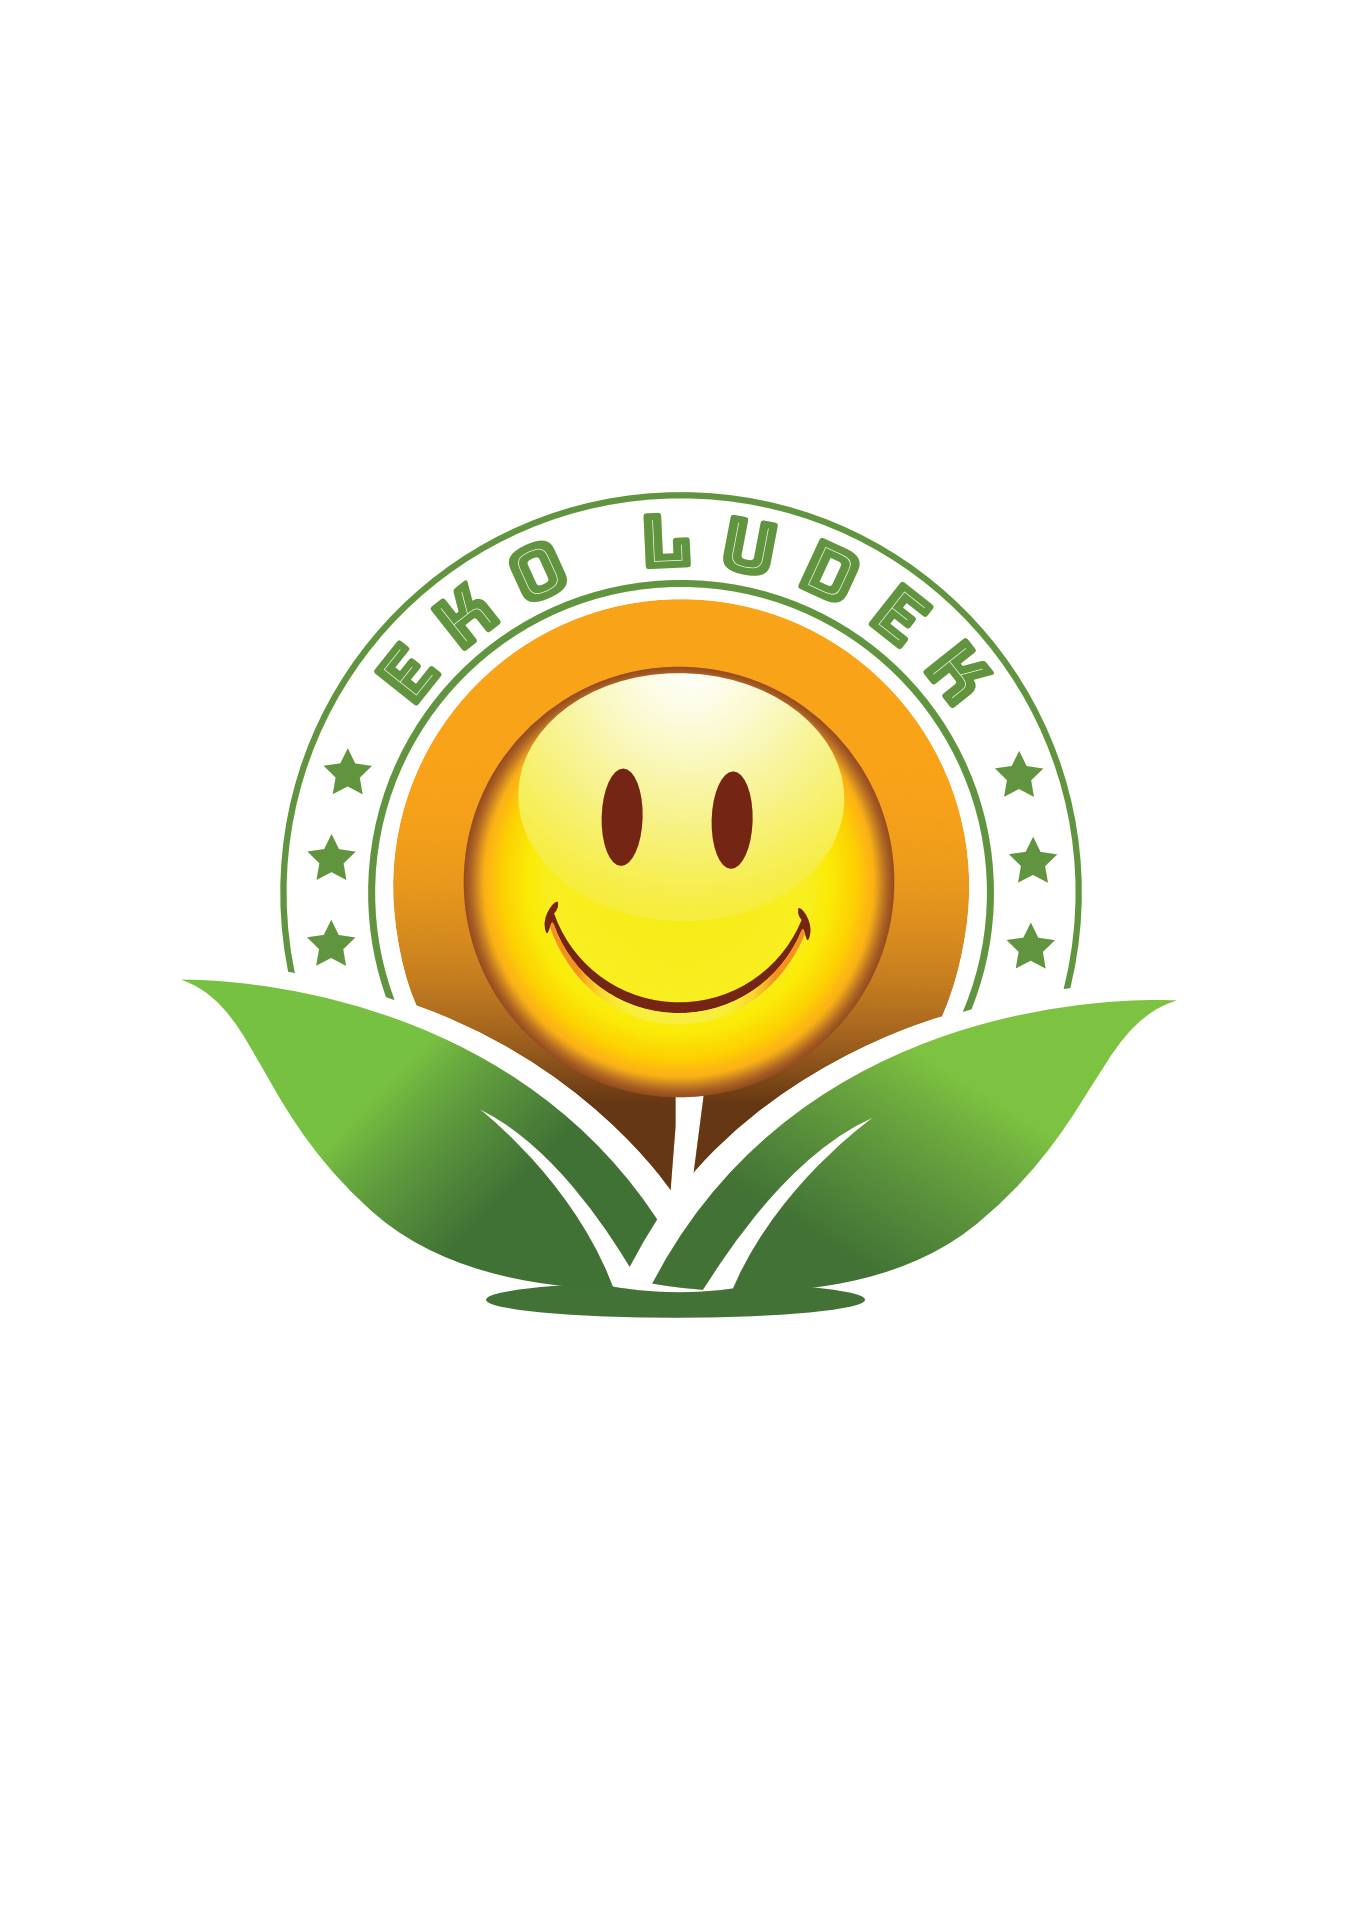 eko-ludek-logo.jpg